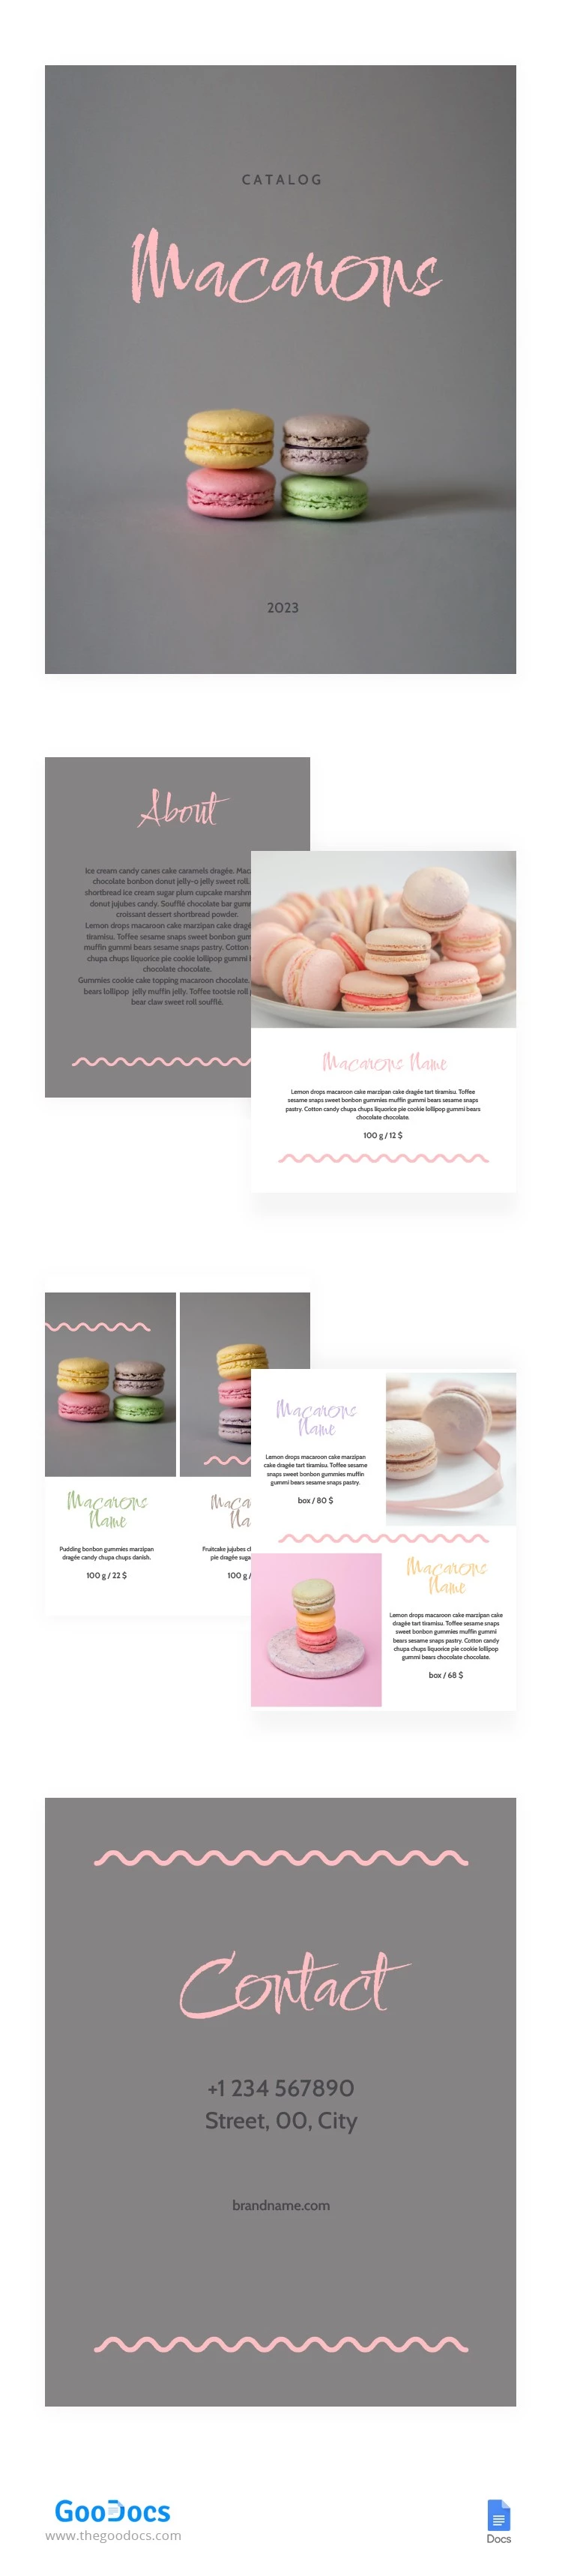 Catalogo di deliziosi Macarons - free Google Docs Template - 10064019